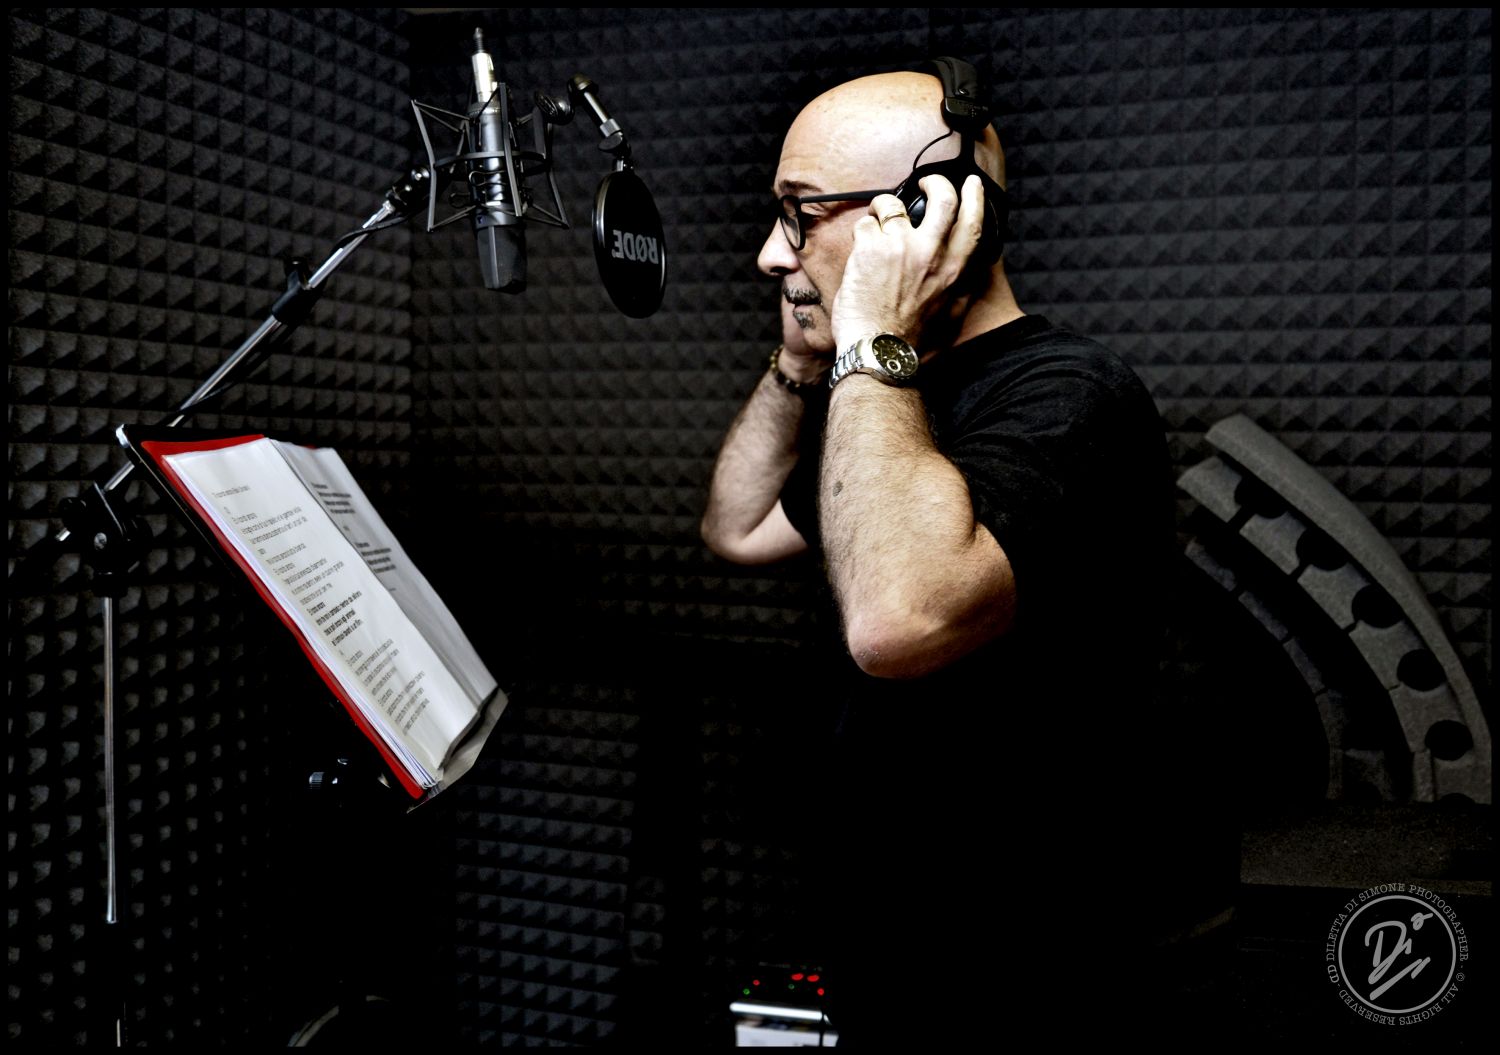 Fuori il video di “Rosanna”, nuovo singolo del cantautore siciliano Samaritano con il feat. di Nino Buonocore